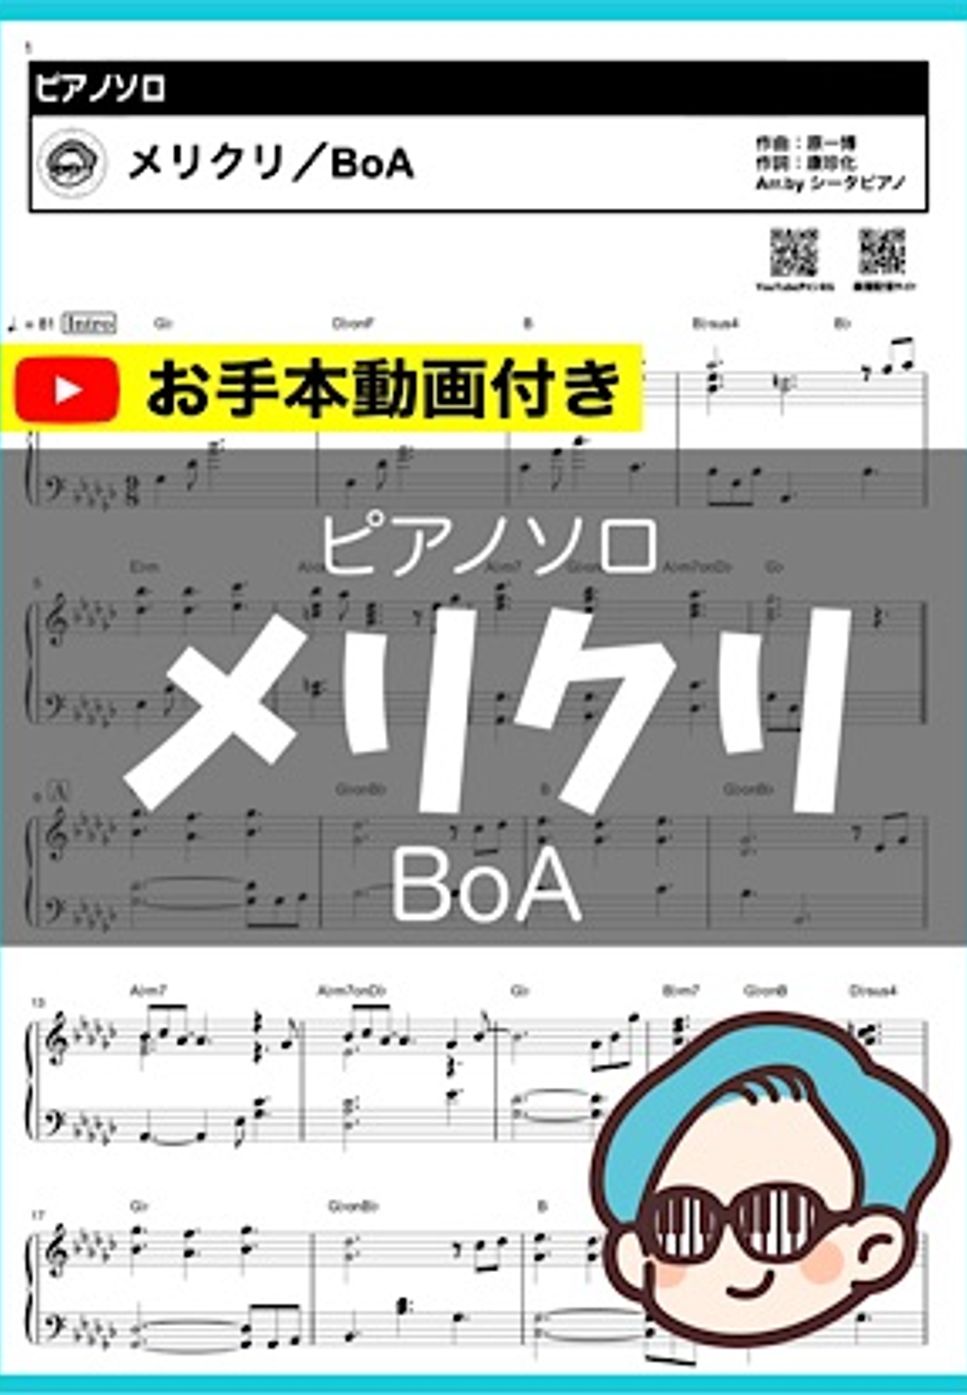 BoA - メリクリ by シータピアノ